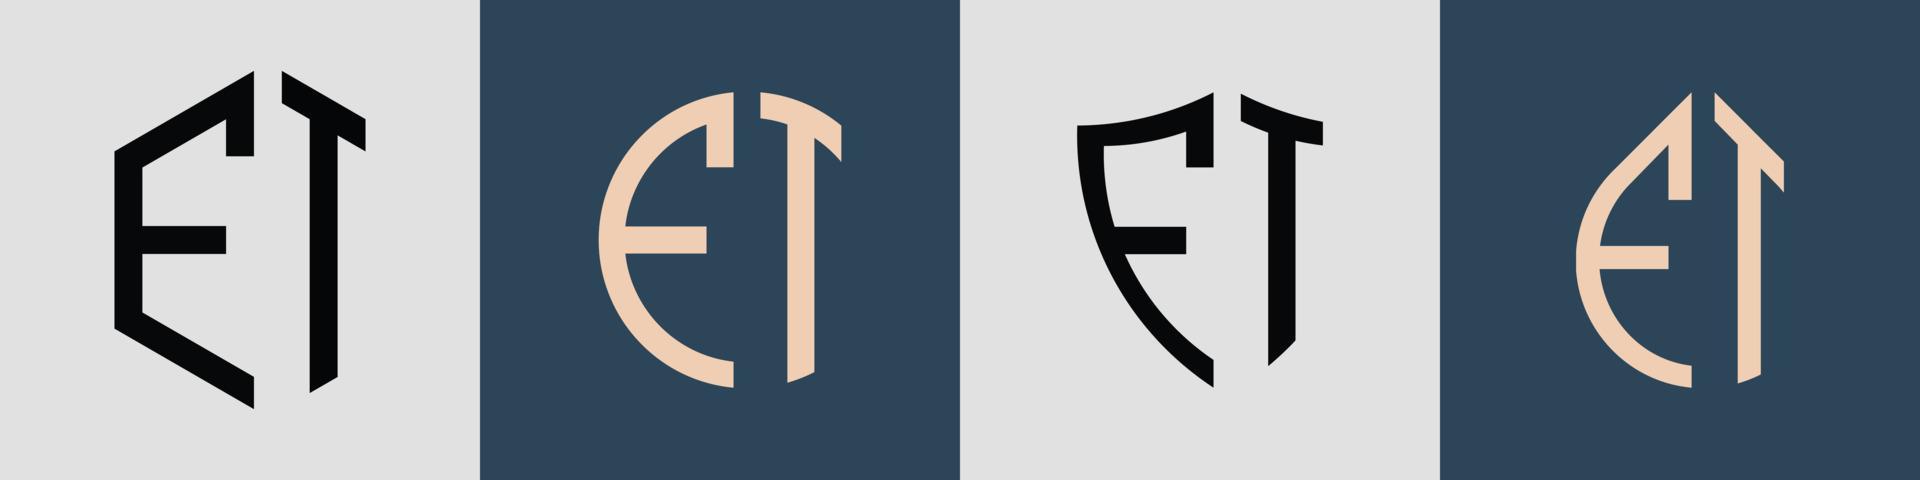 Paquete de diseños de logotipos de letras iniciales simples y creativas. vector